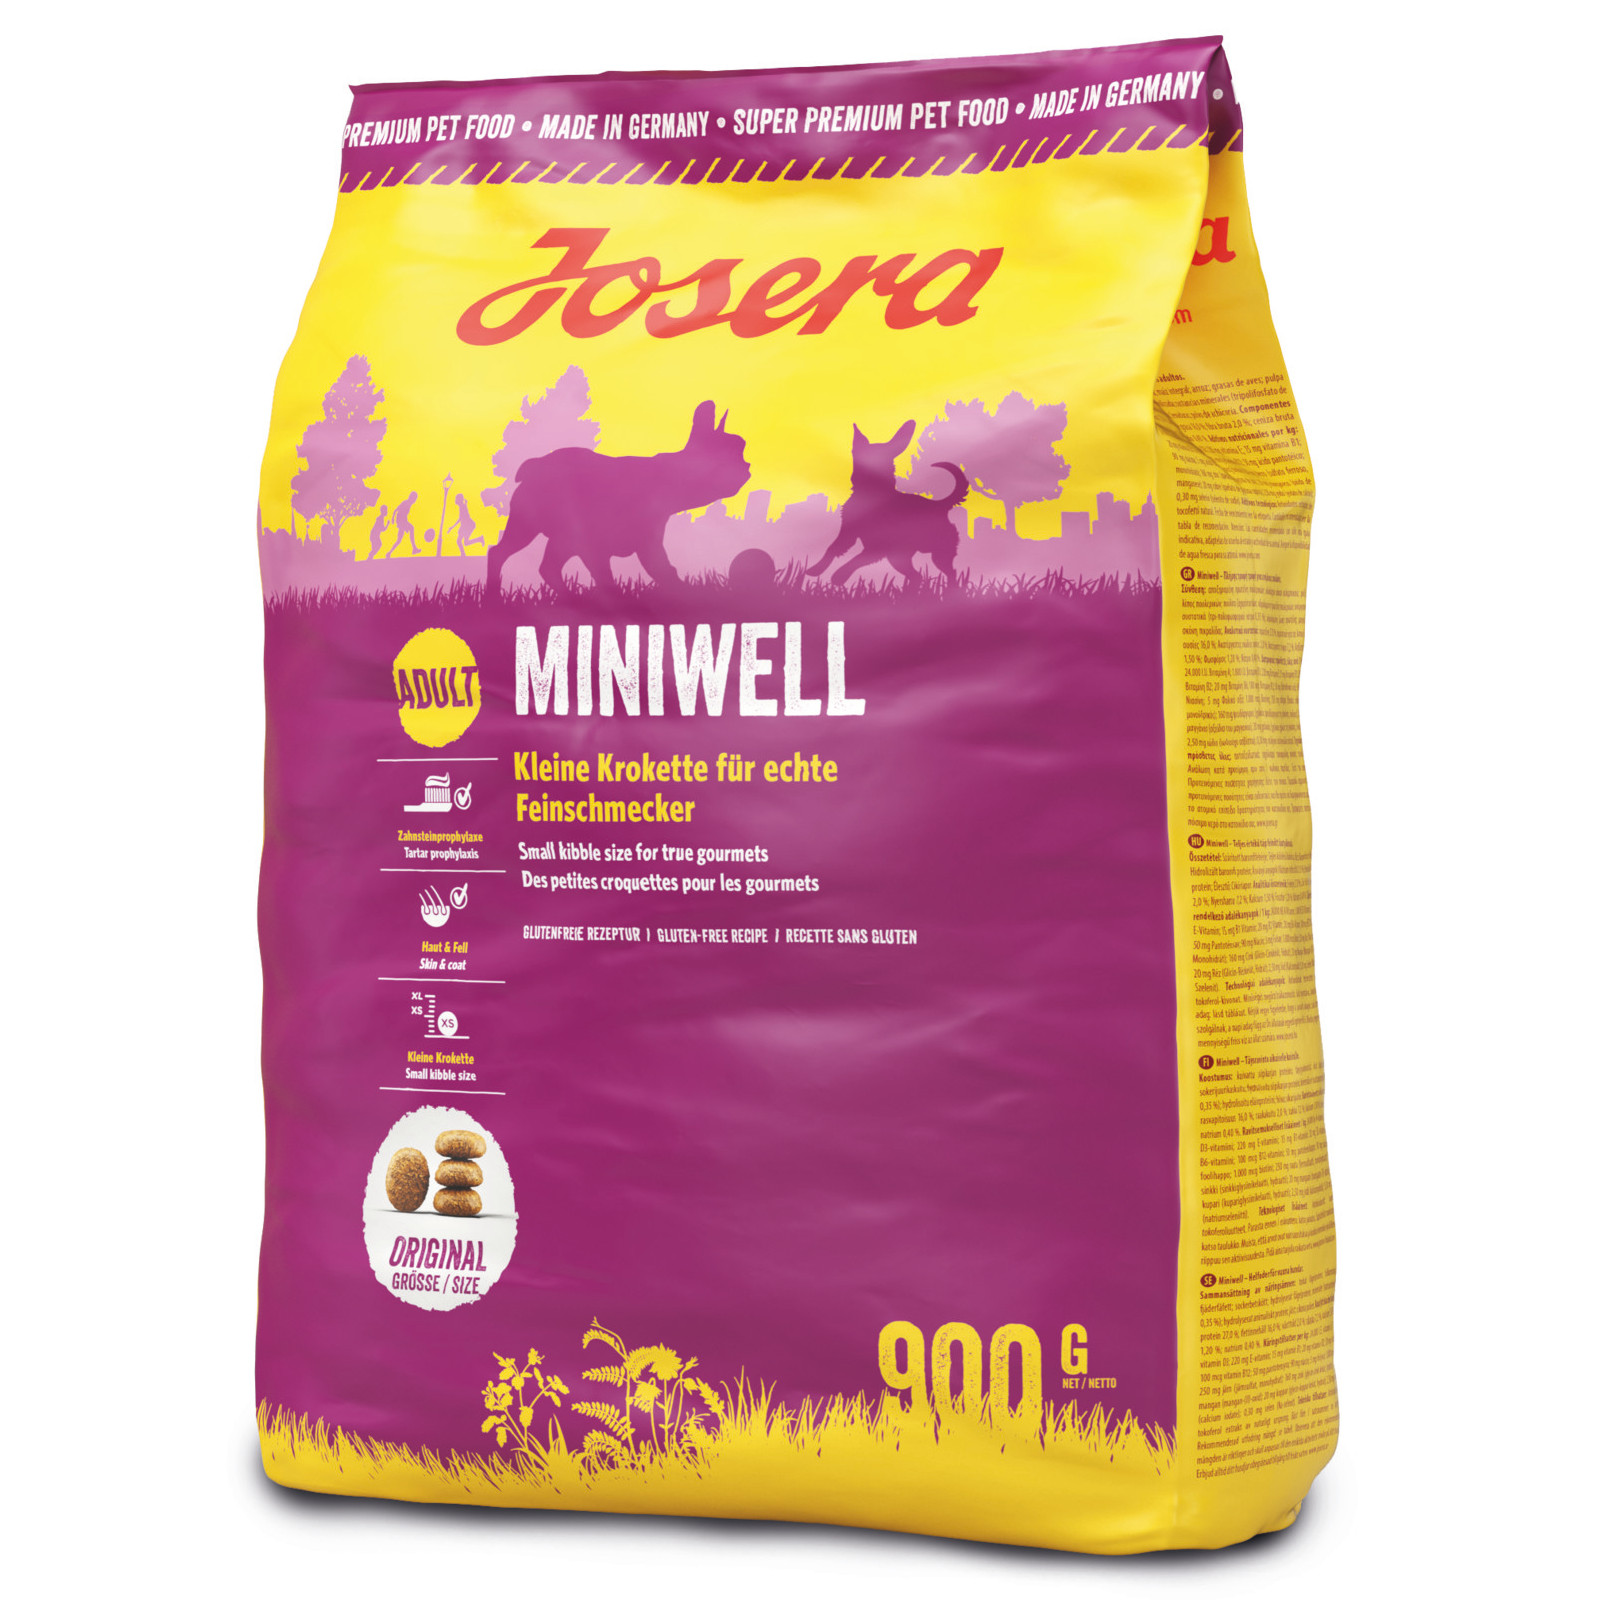 Josera Miniwell 900g | Futtermittel Online Shop Mühle Gladen